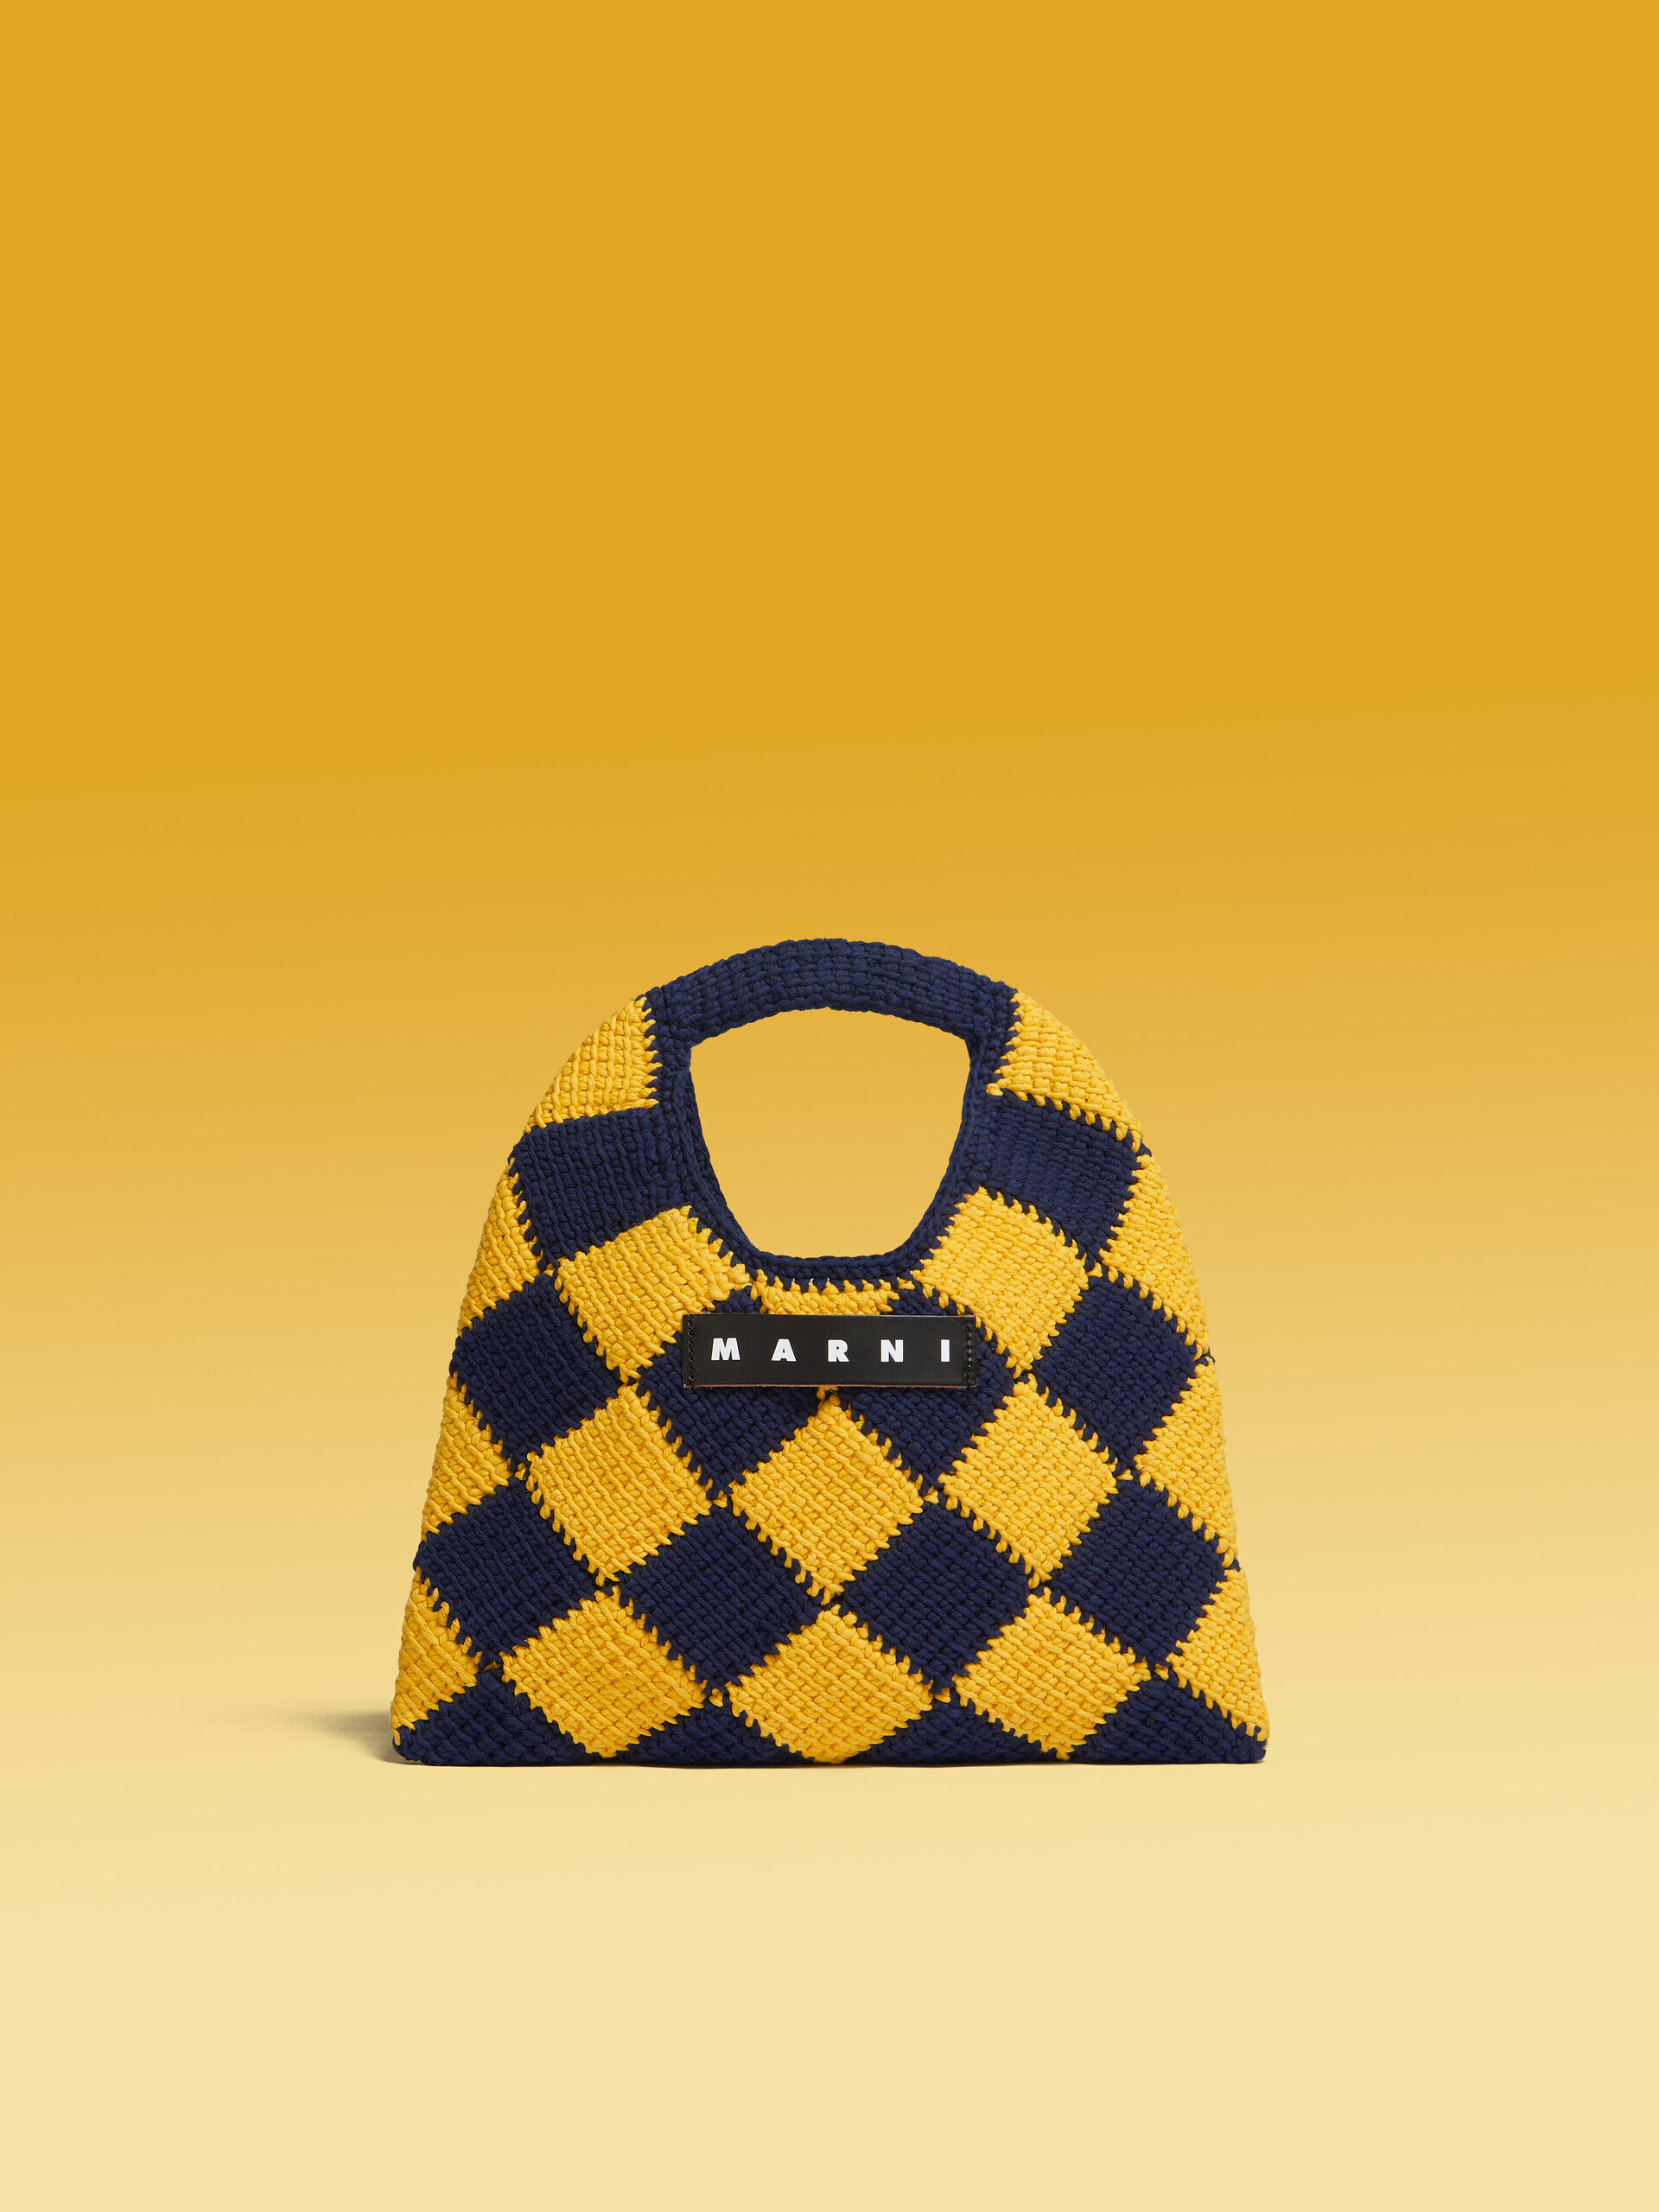 MARNI MARKET DIAMOND mini bag in yellow and blue tech wool | Marni